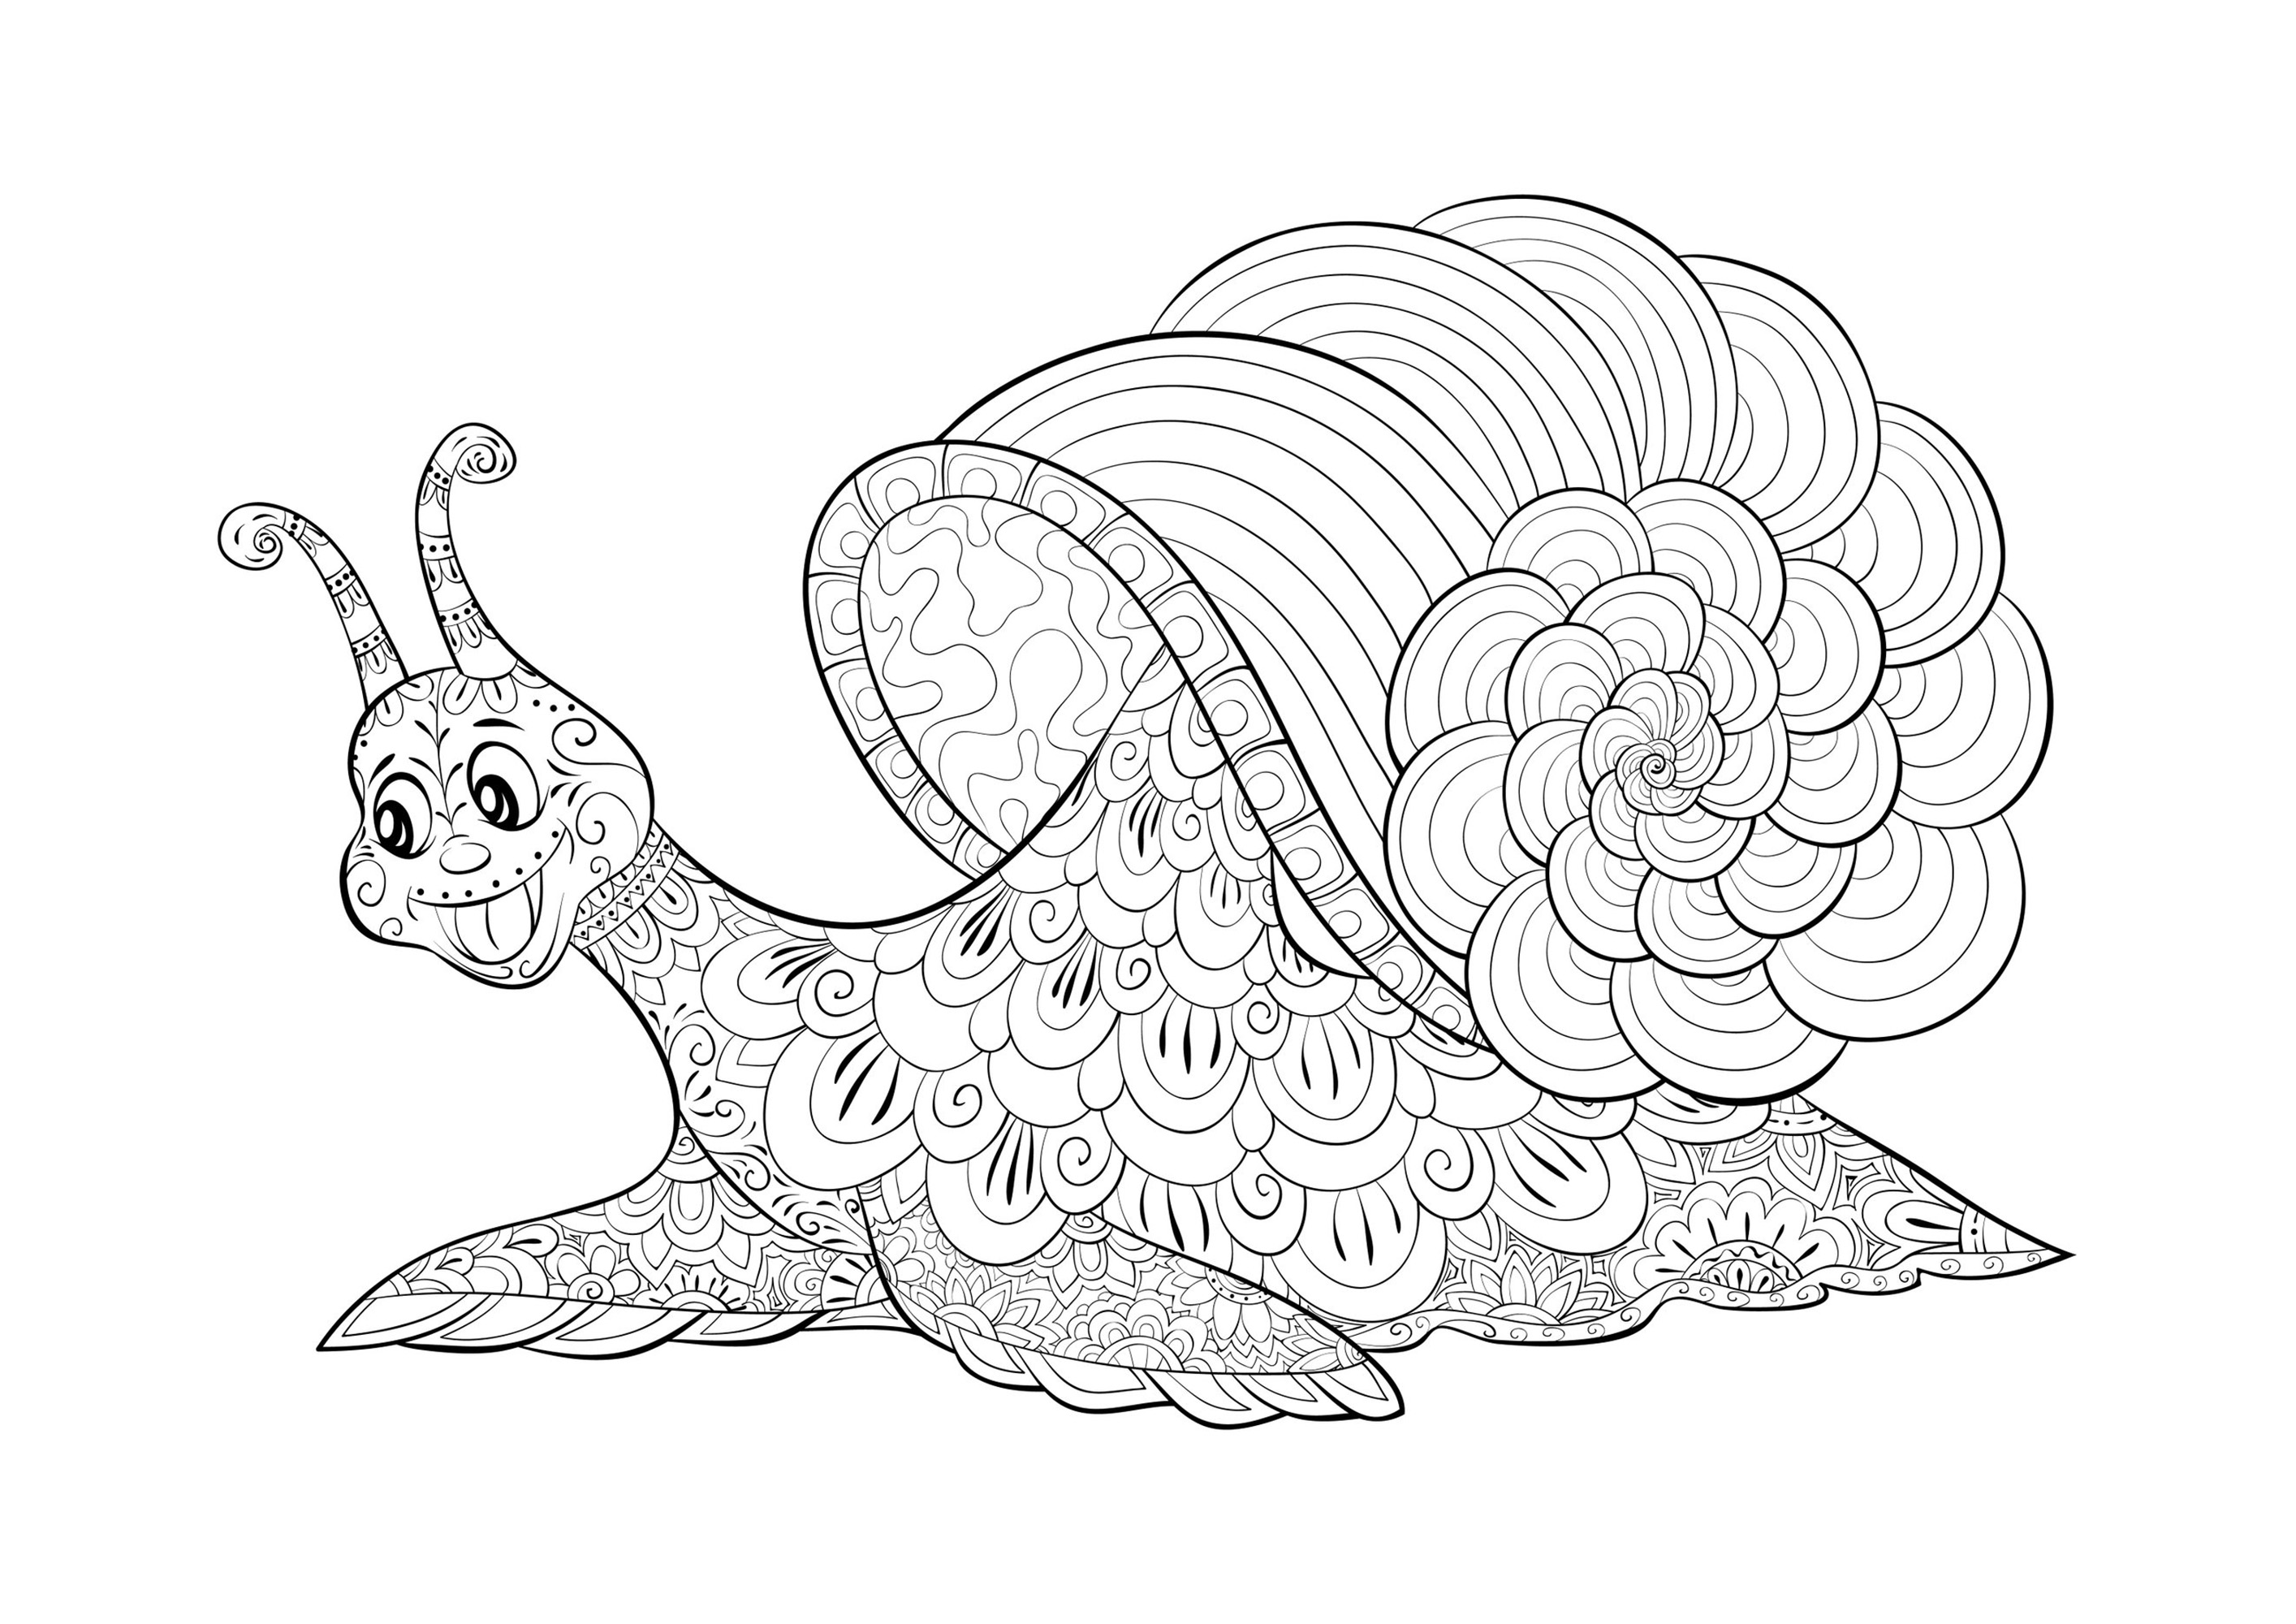 Coloriage d'un escargot souriant, composé de motifs plus ou moins complexes, Source : 123rf   Artiste : Nonuzza